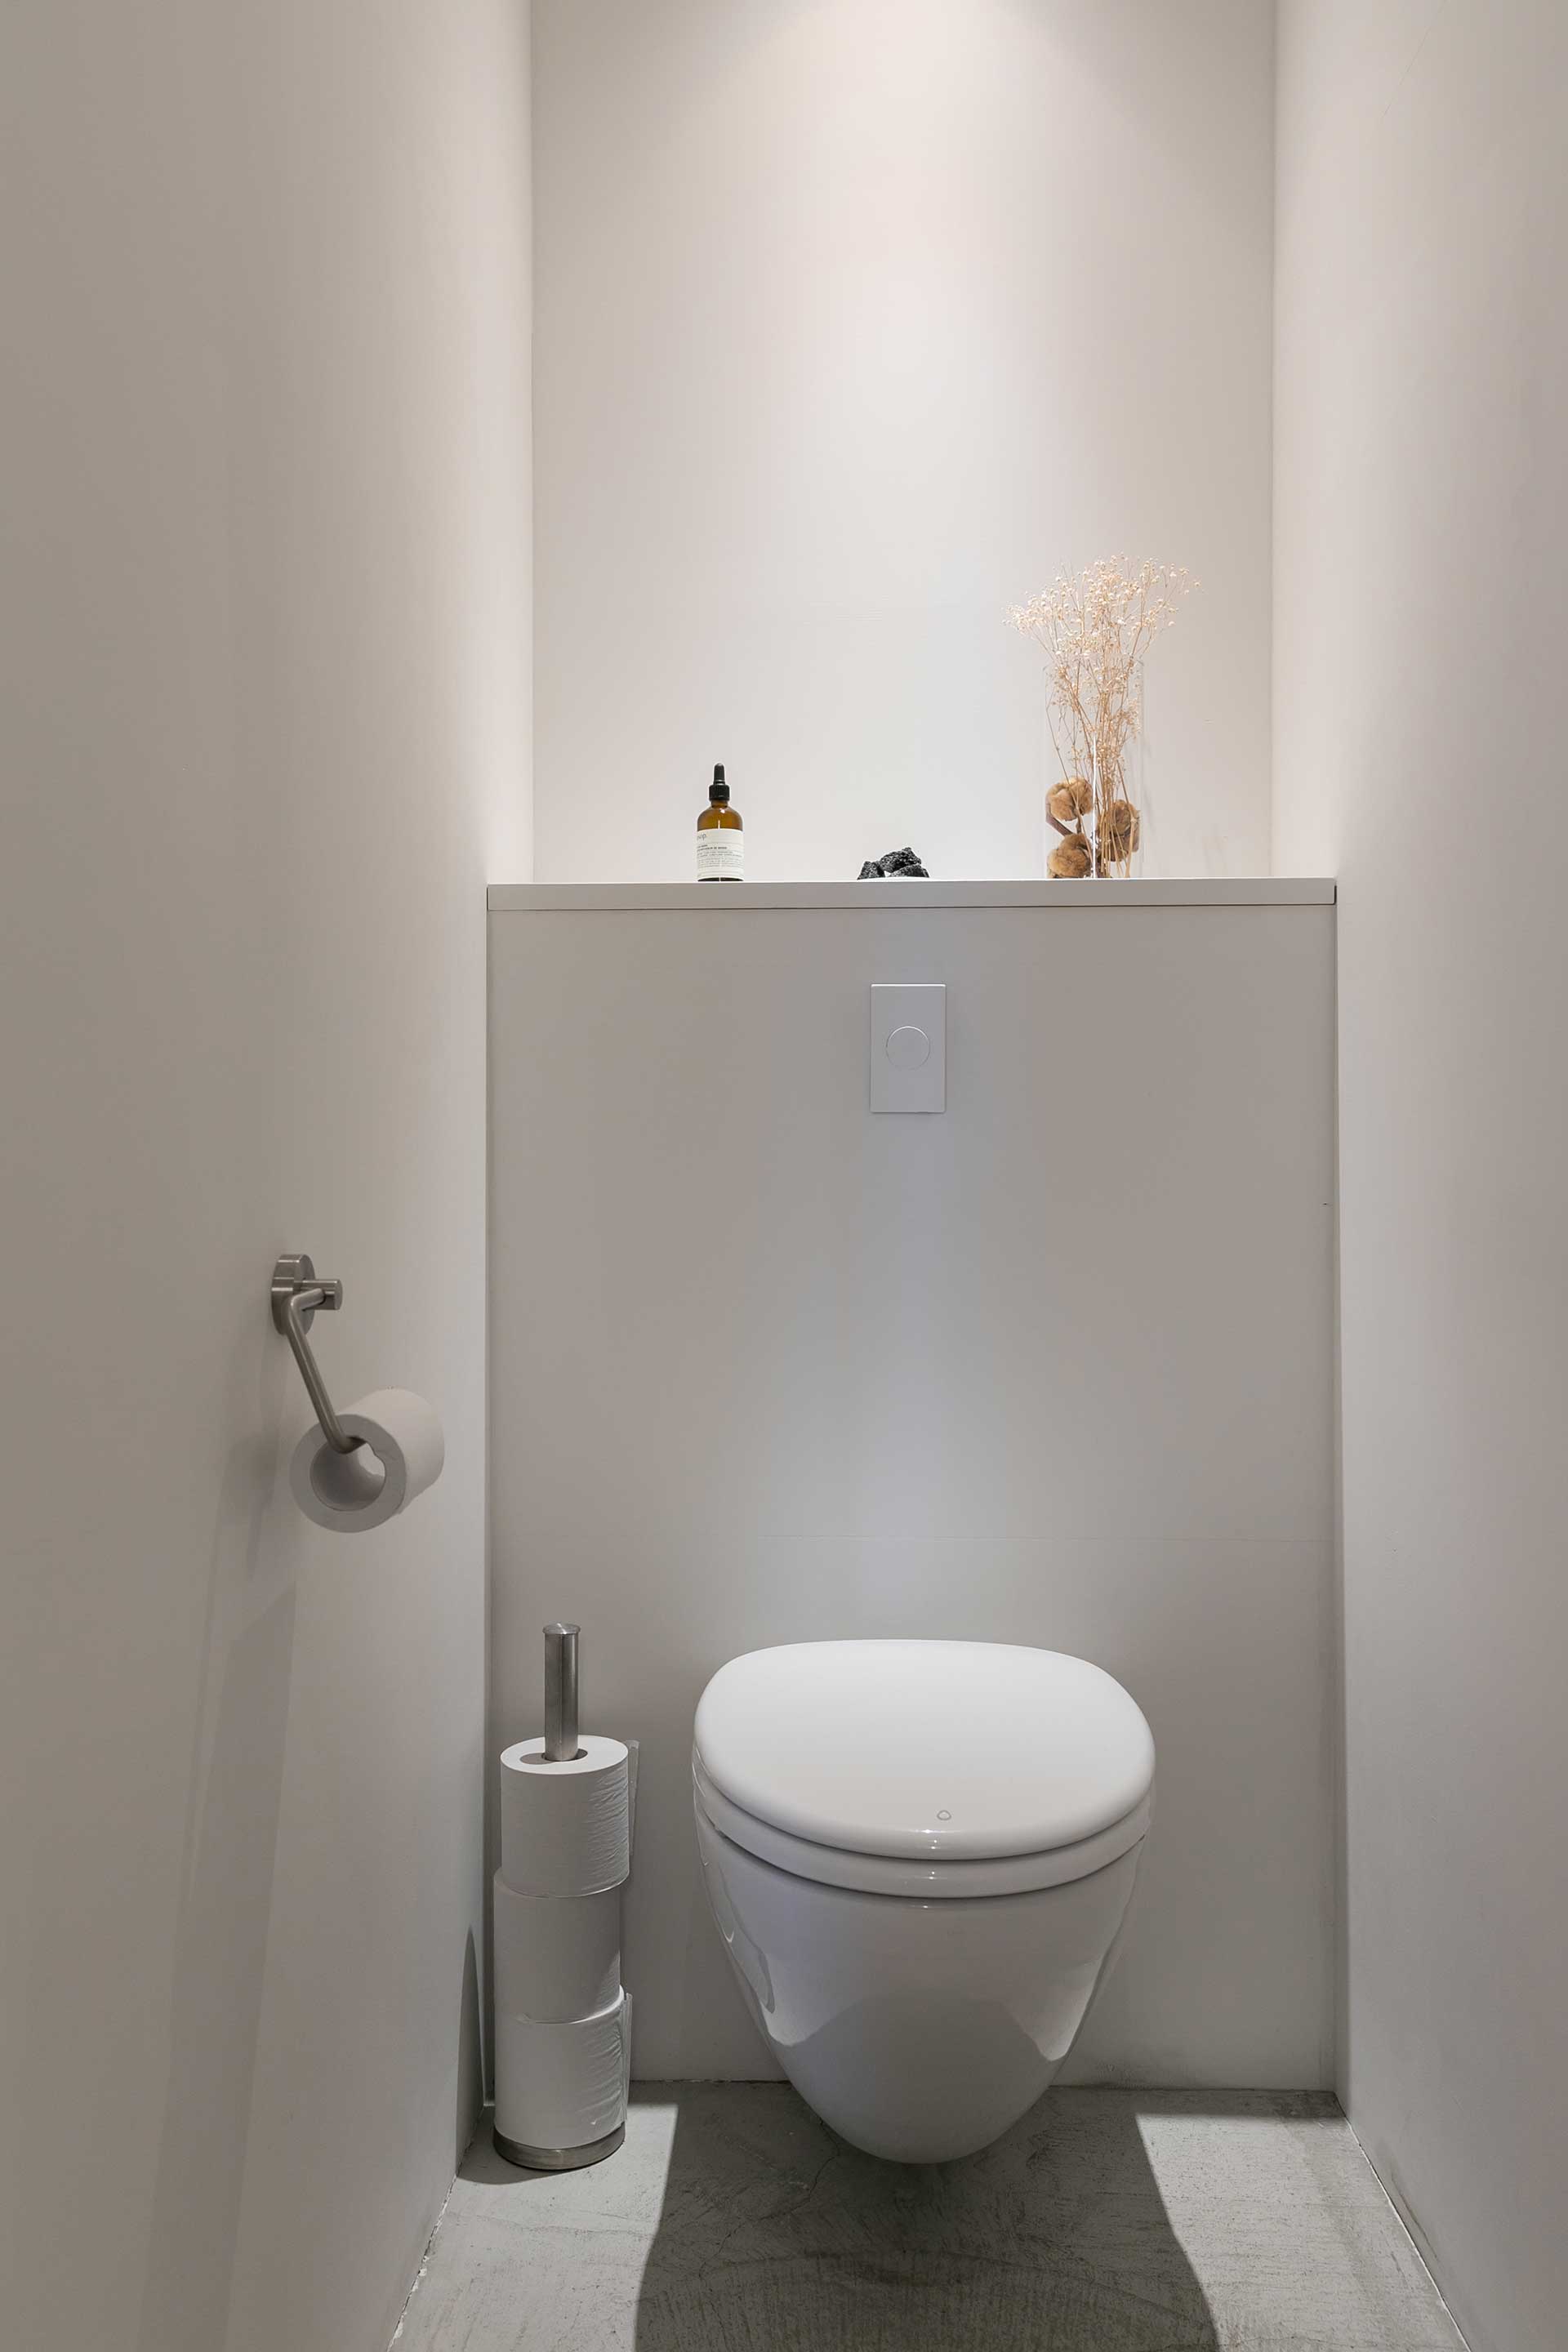 壁付けのLIXILのトイレは床から浮いているデザイン。「もともと公共のトイレのために作られたもので、掃除のしやすさは抜群です」。操作スイッチもシンプルでスタイリッシュ。